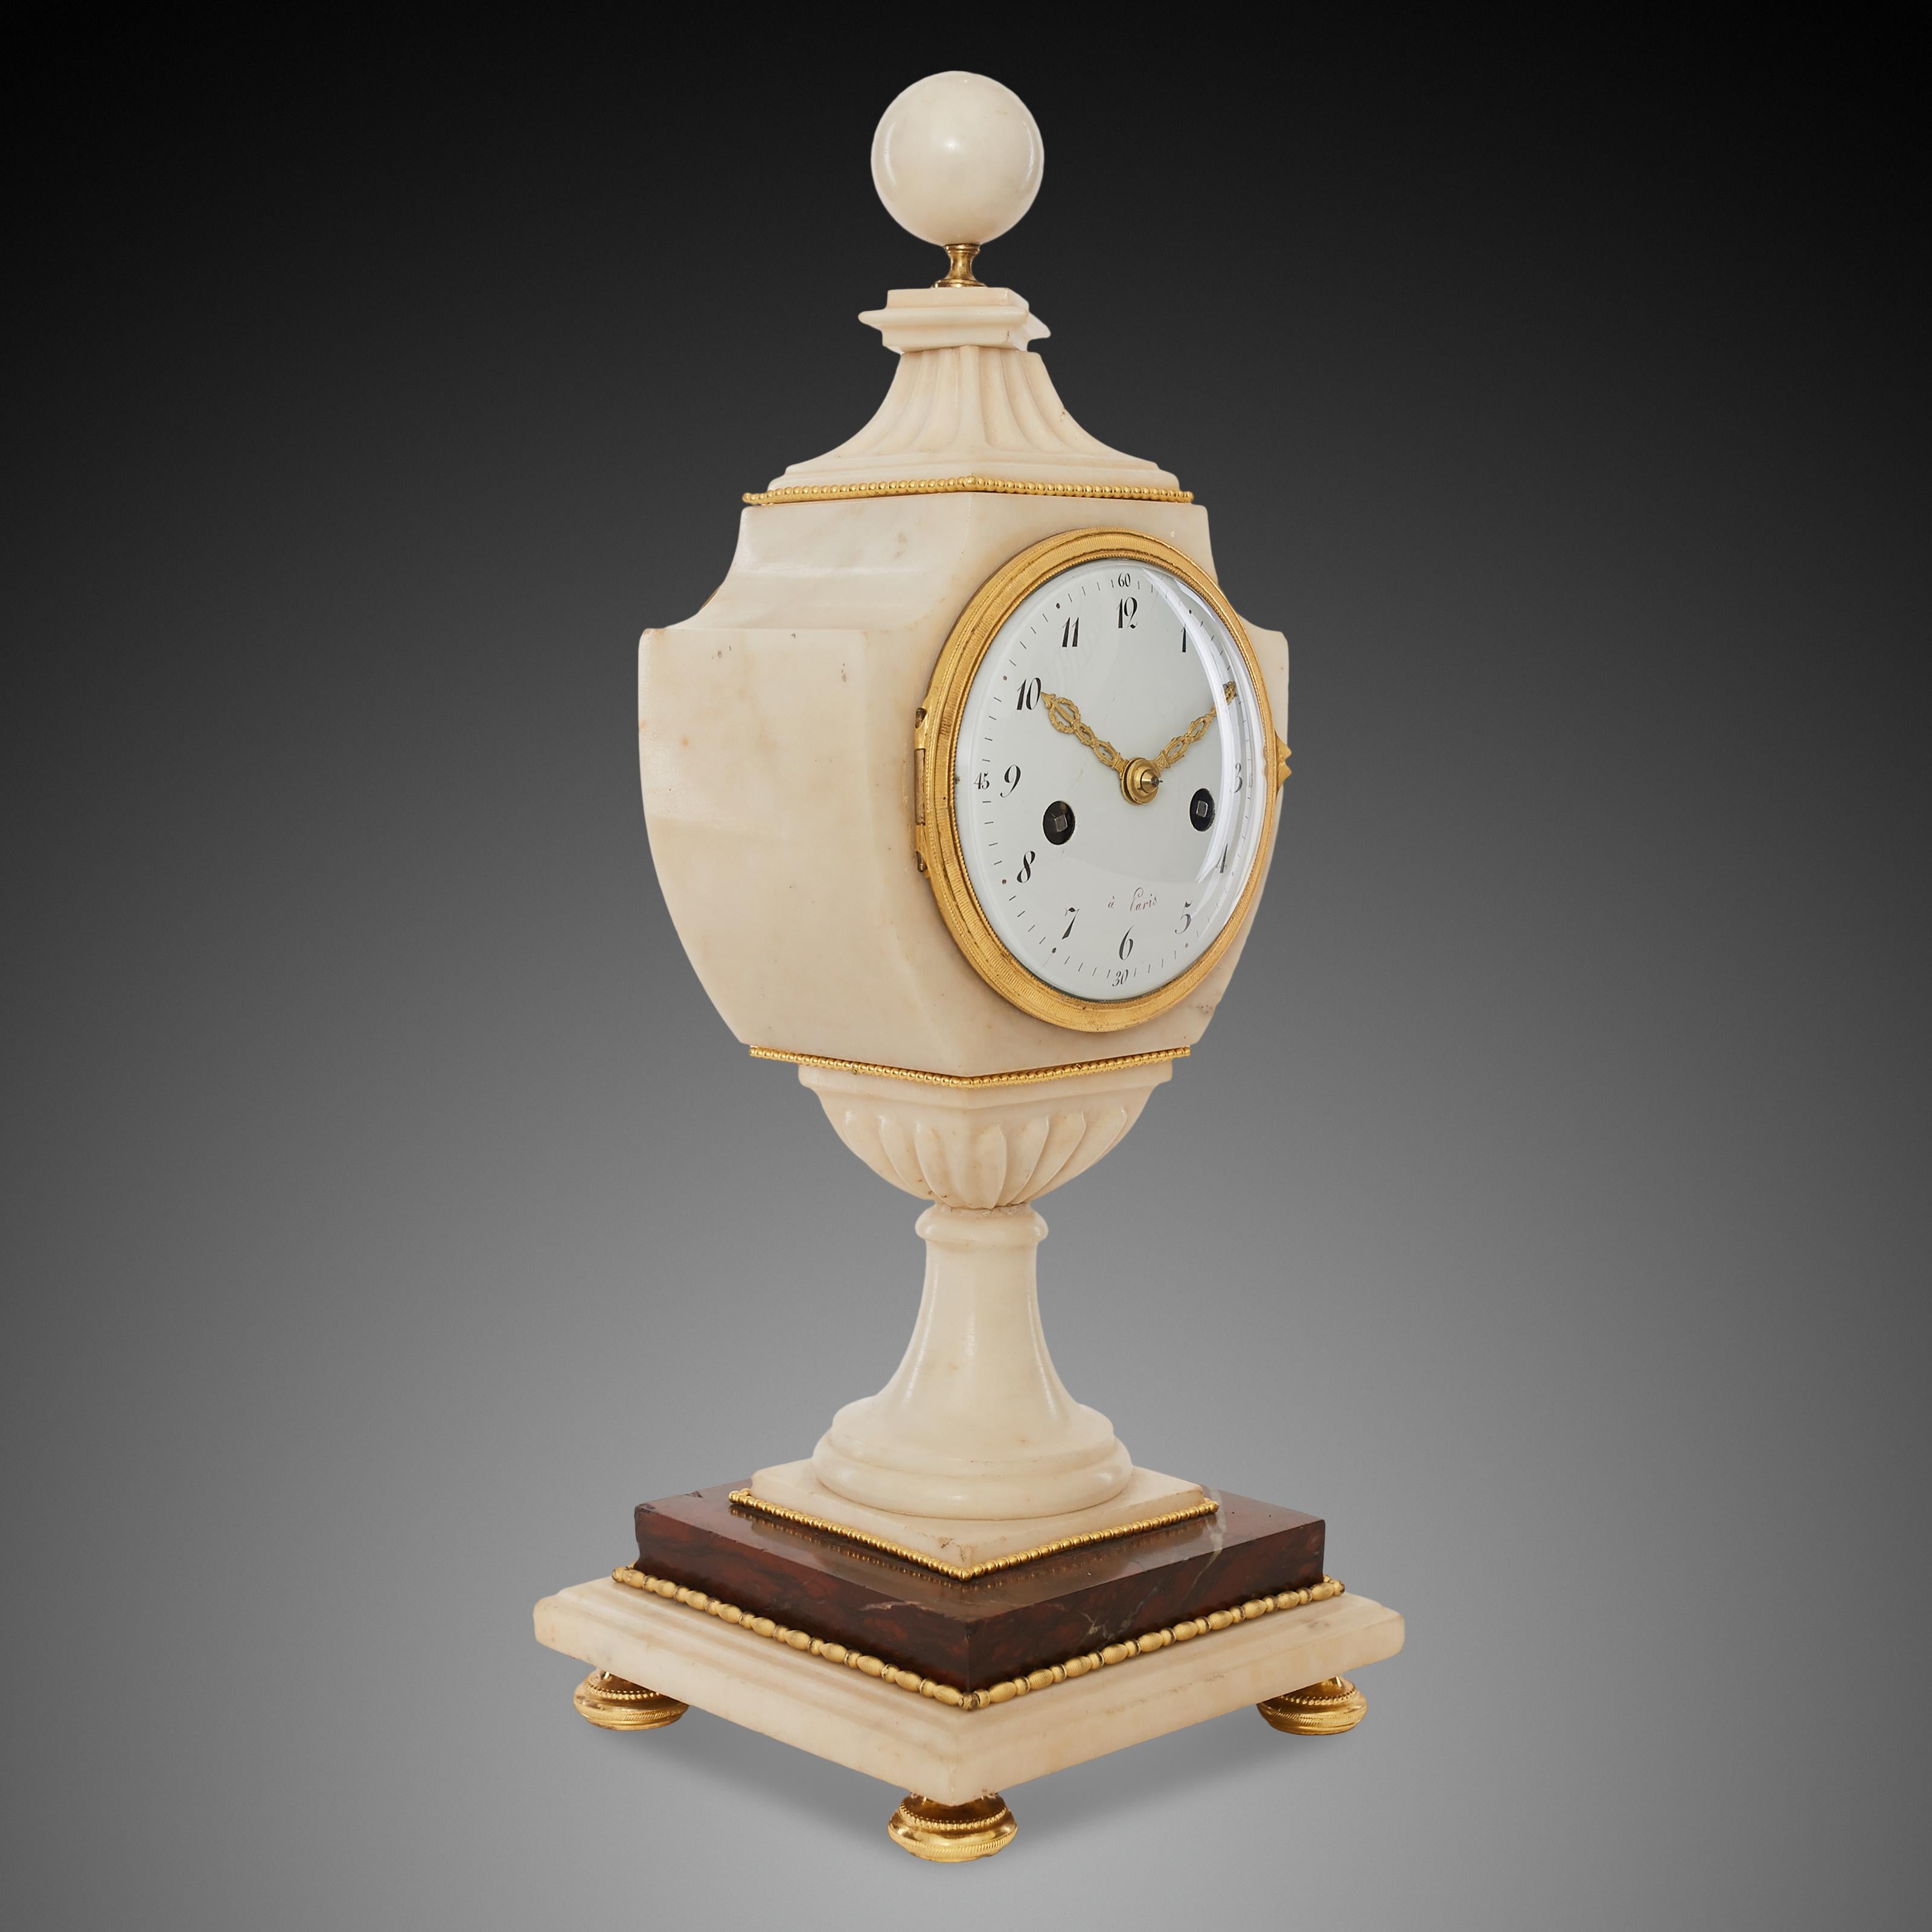 Cette horloge de cheminée ancienne a été créée à Paris à la fin du XVIIIe siècle. Le corps principal de la pendule de cheminée est en marbre blanc et le socle est constitué d'un fragment de marbre rouge Napoléon, ce qui confère à la pendule de